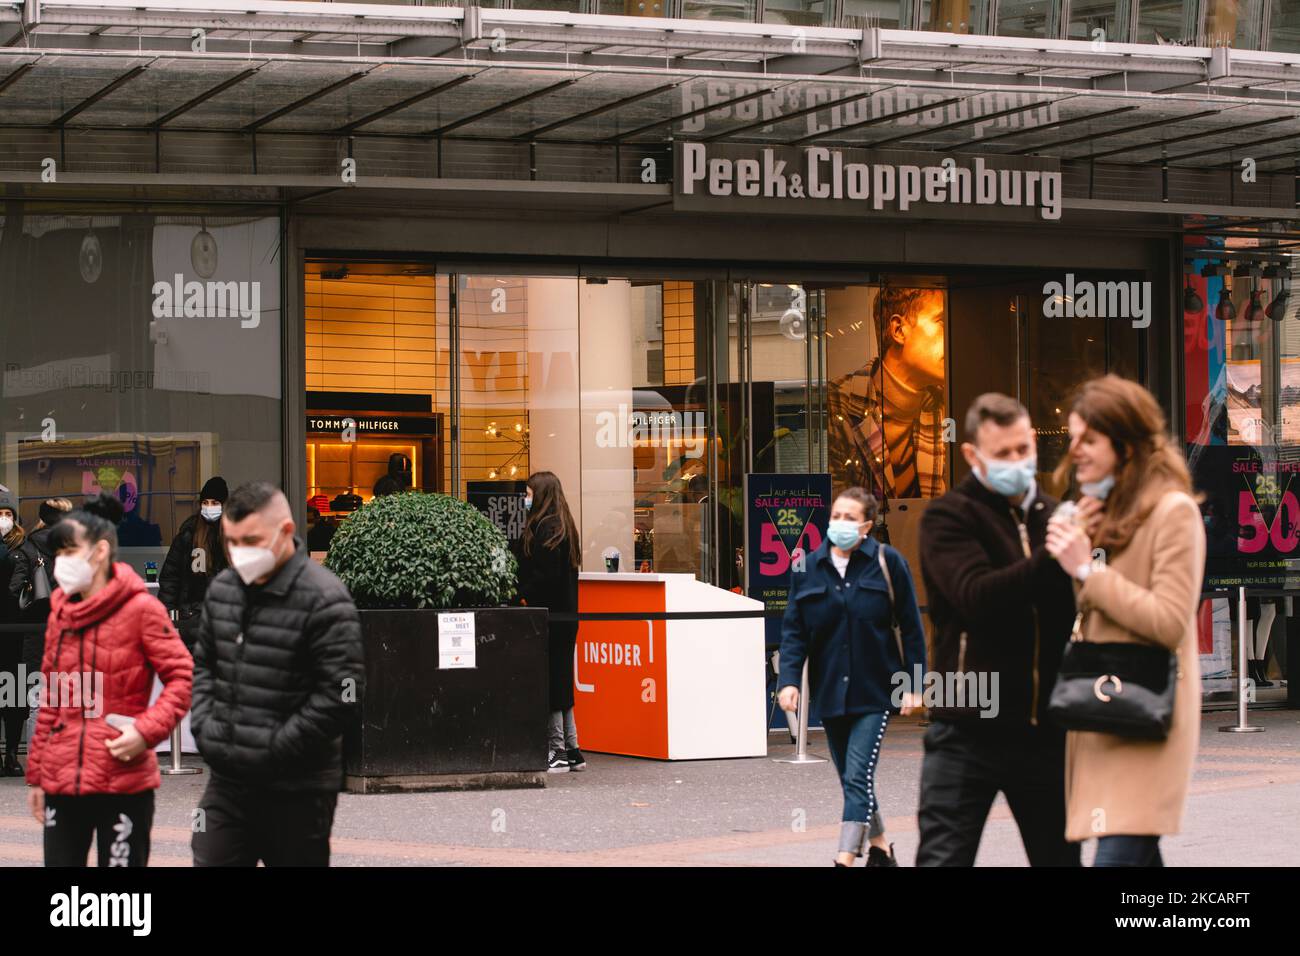 Am 13,2021. März laufen die Menschen am Kaufhaus Peek & Cloppenburg in der Kölner Innenstadt vorbei, da Deutschland langsam wieder eröffnet wird (Foto: Ying Tang/NurPhoto) Stockfoto